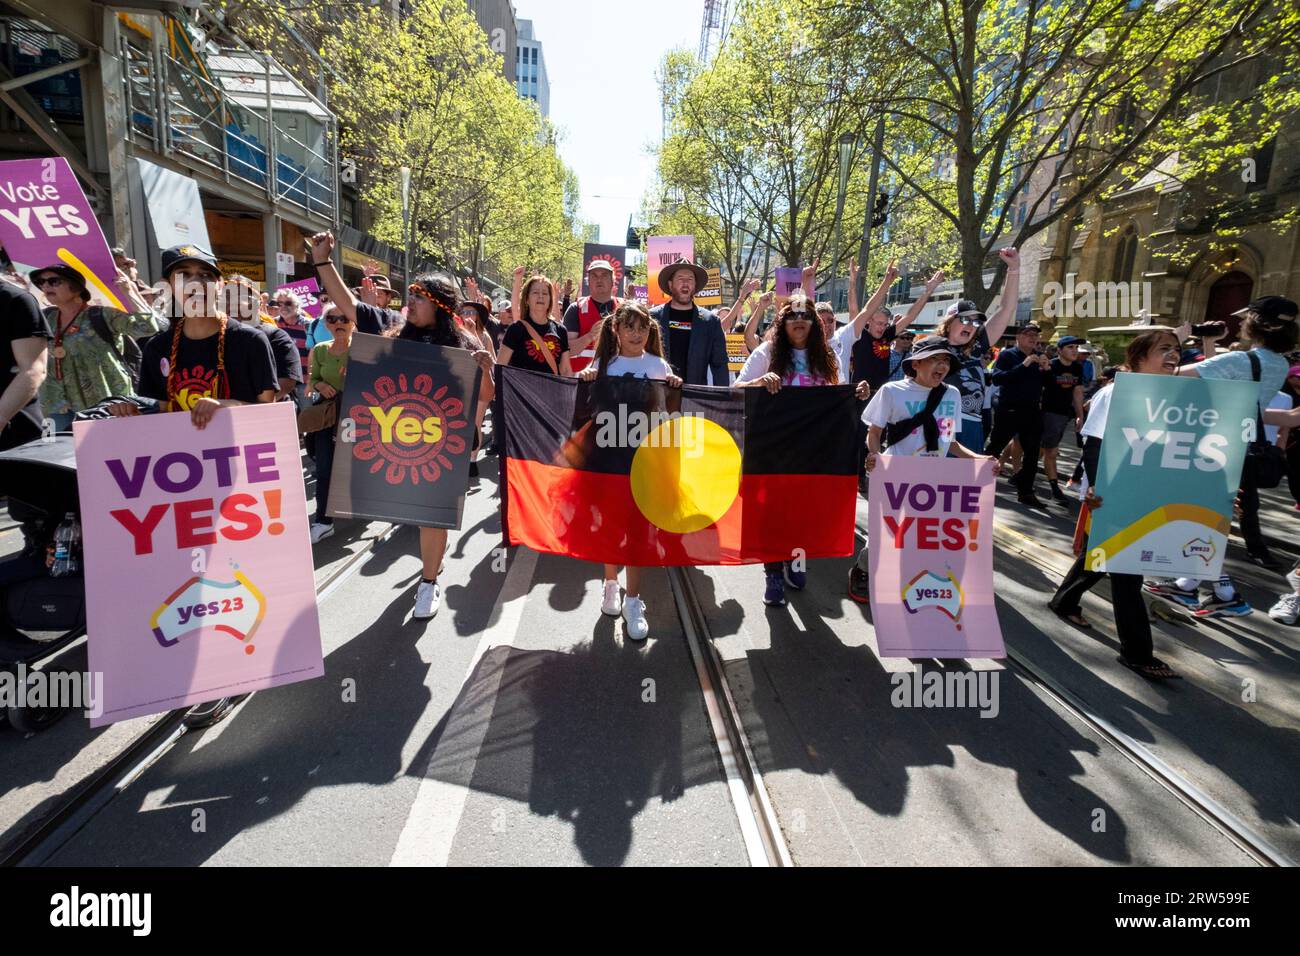 Les manifestants marchent pour soutenir la campagne du Oui lors du référendum australien reconnaissant les Australiens indigènes dans la constitution. Melbourne, Victoria, Australie Banque D'Images